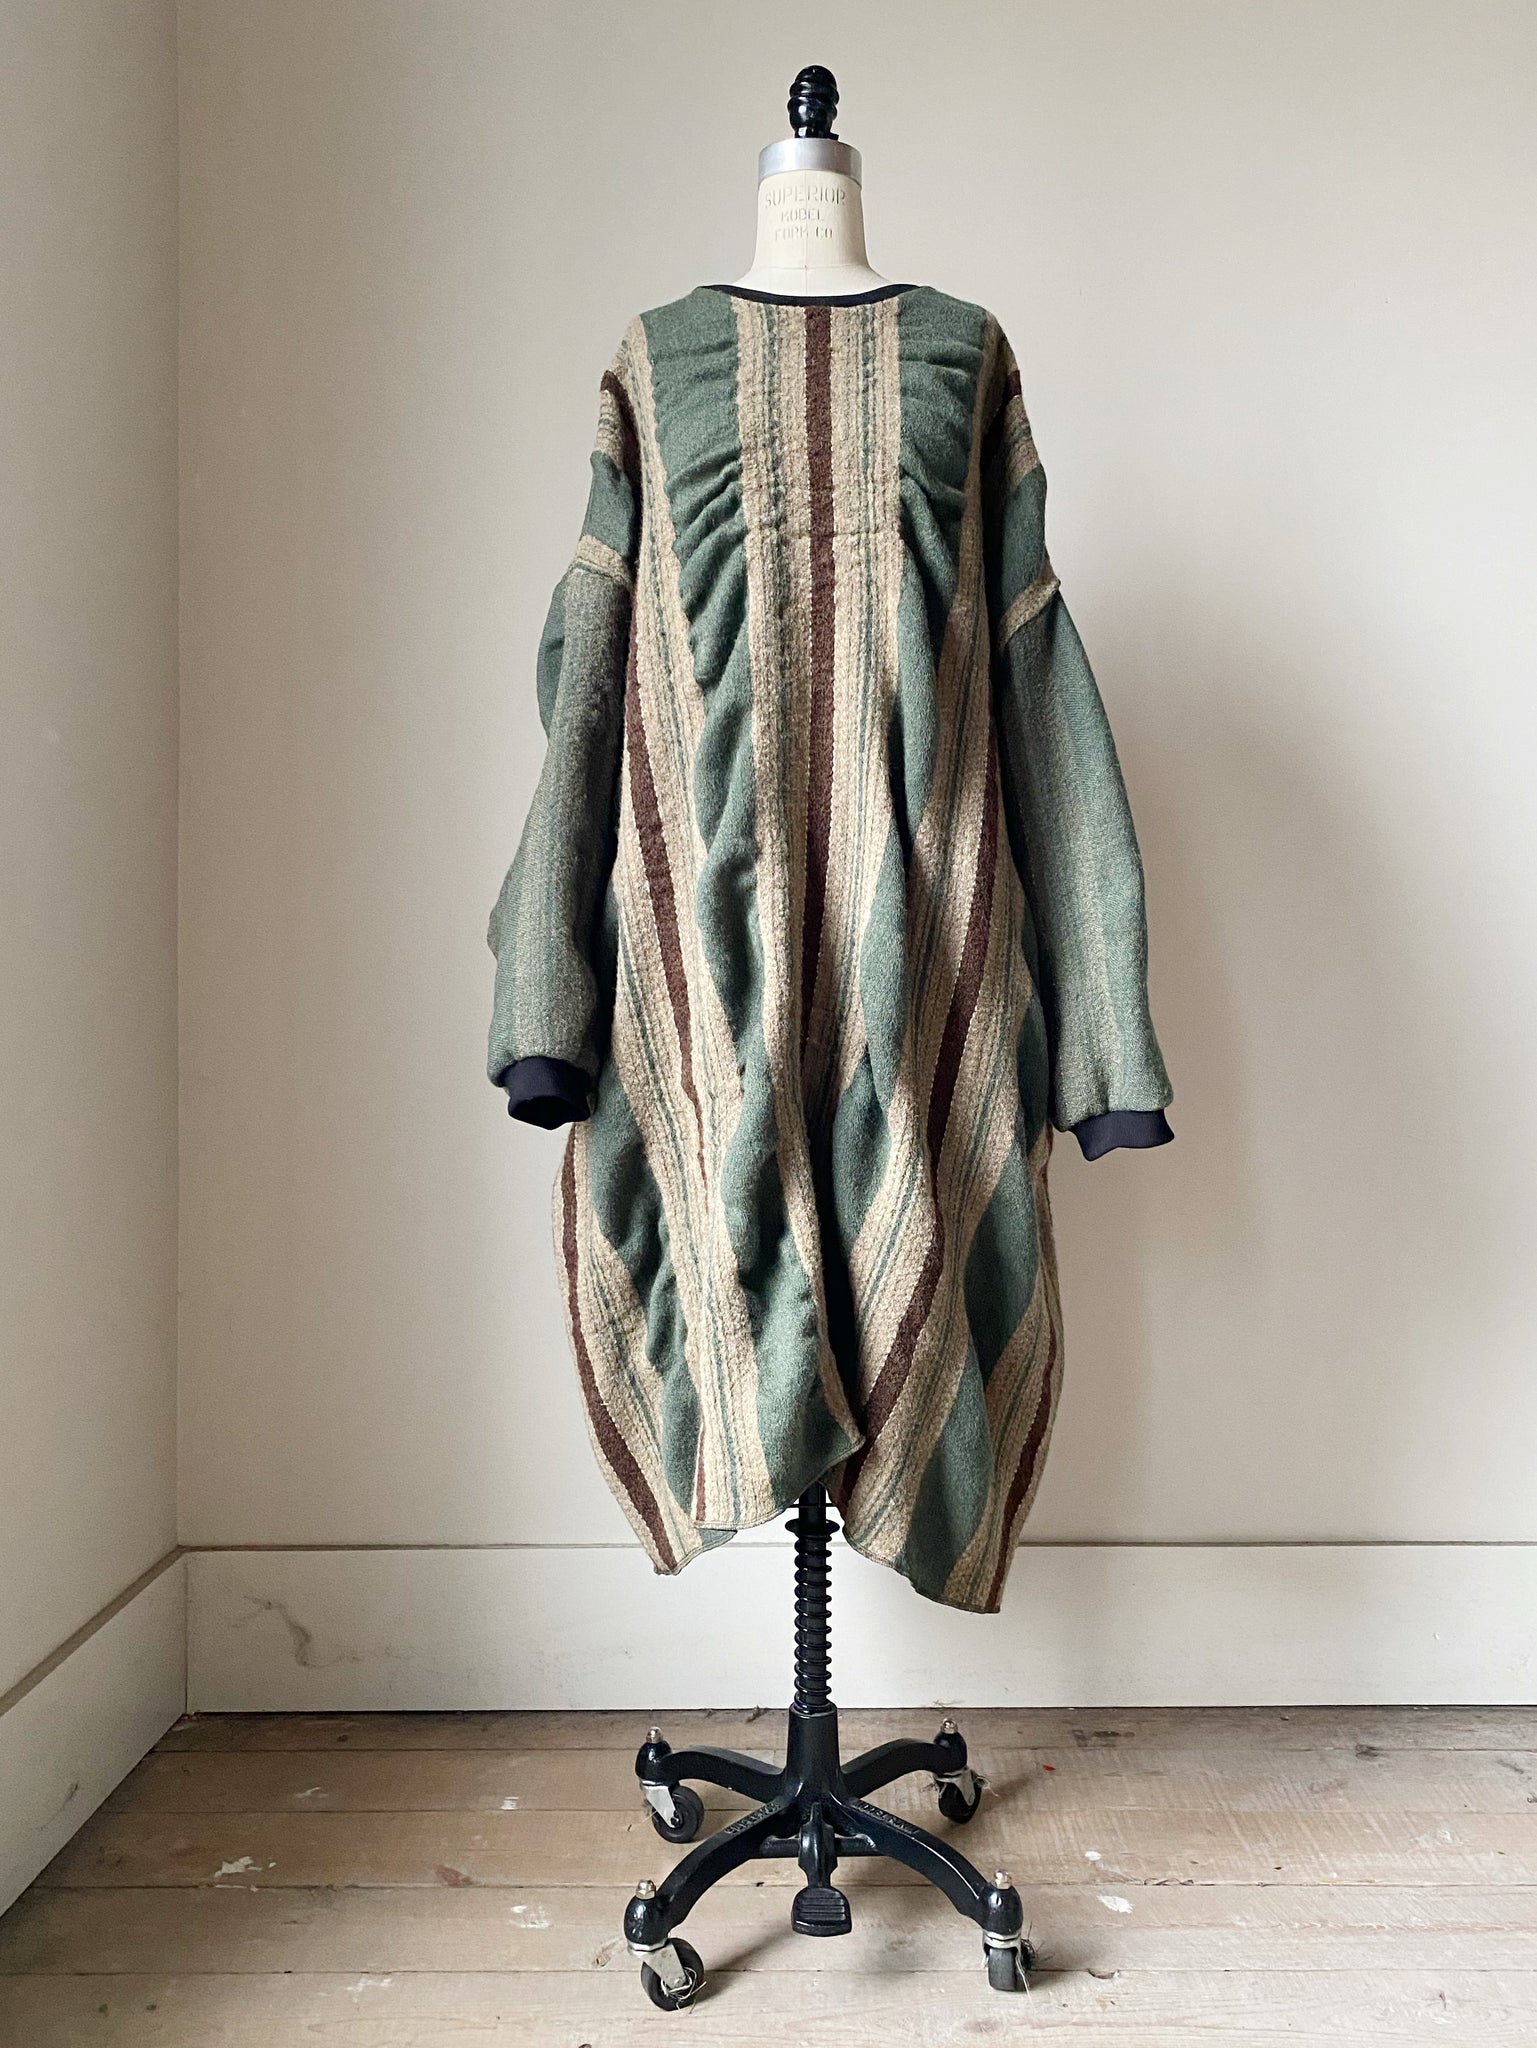 Gilded Age shrunken blanket dress #2